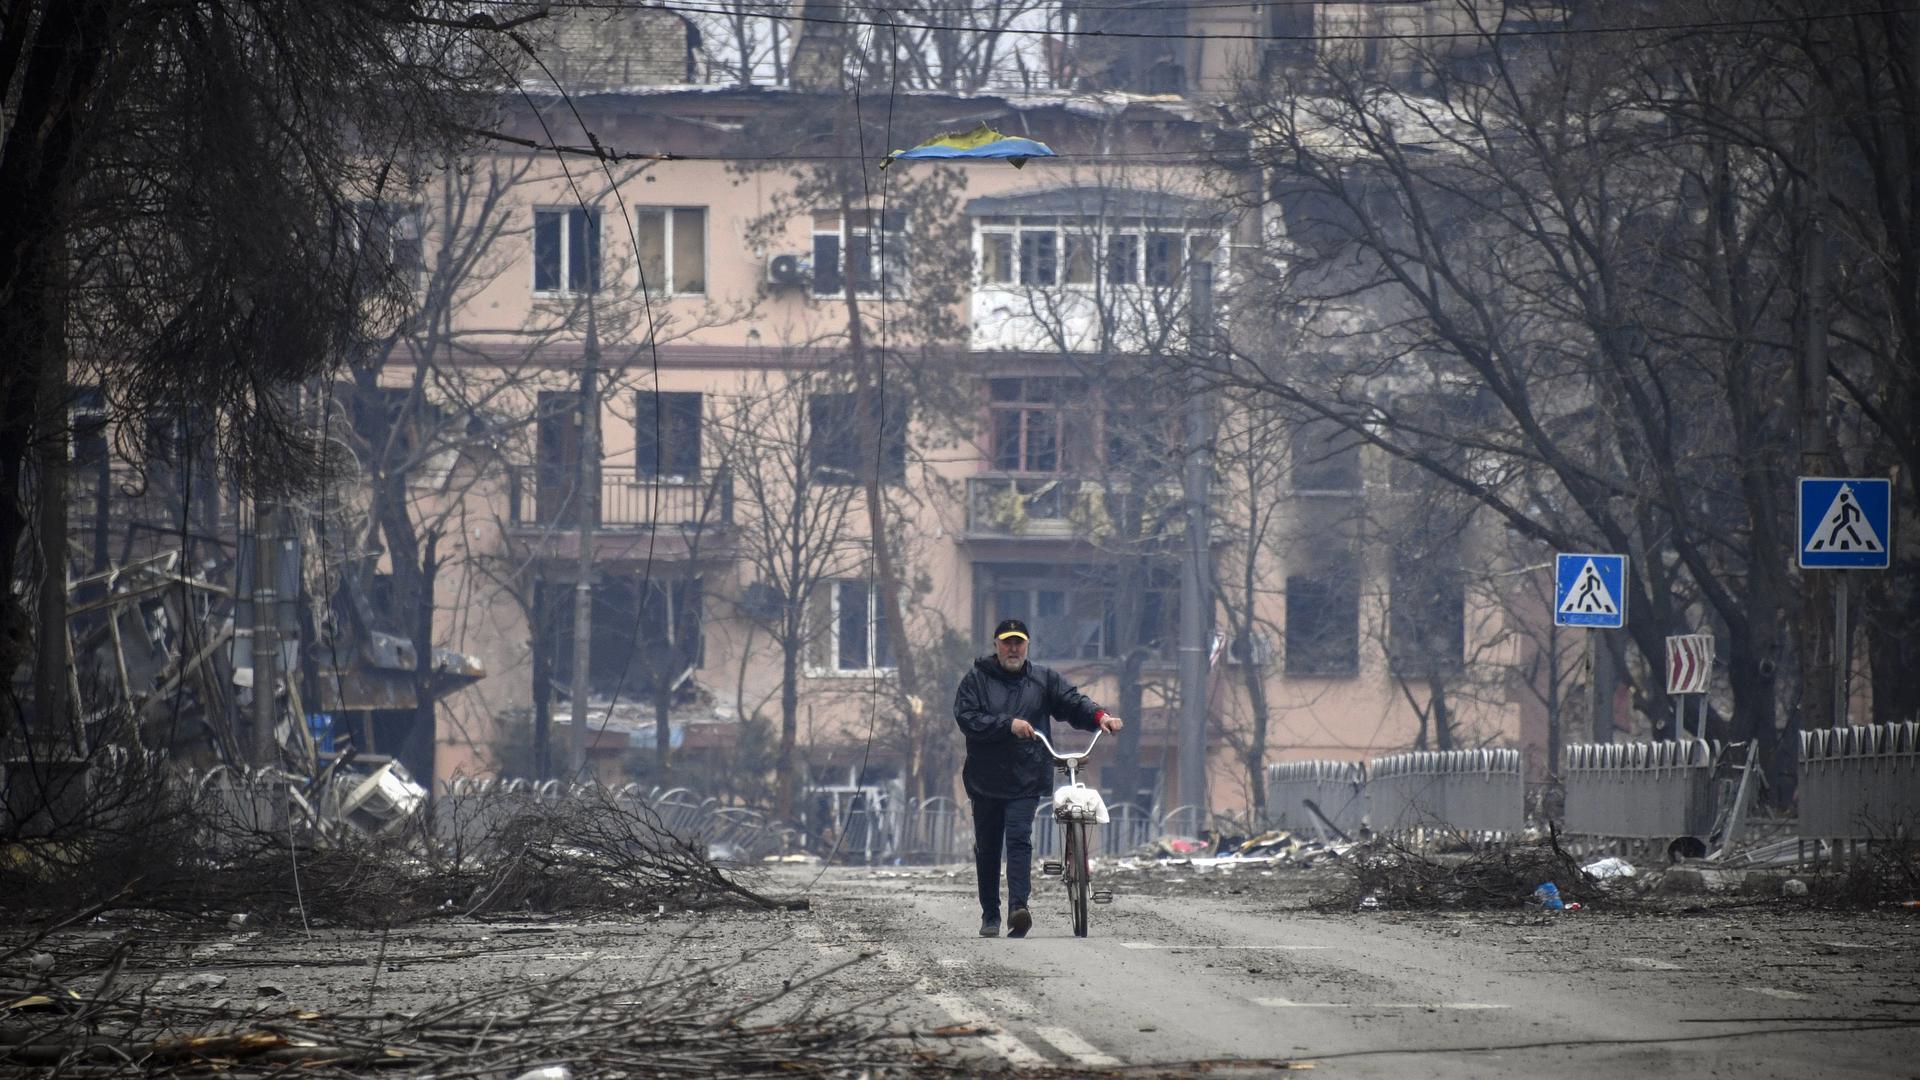 Bild der Zerstörung: Die von russischen Truppen seit Wochen belagerte Stadt Mariupol wehrt sich noch gegen die Angreifer. Jetzt gibt es einen Bericht, wonach dort angeblich ein chemischer Kampfstoff eingesetzt wurde.